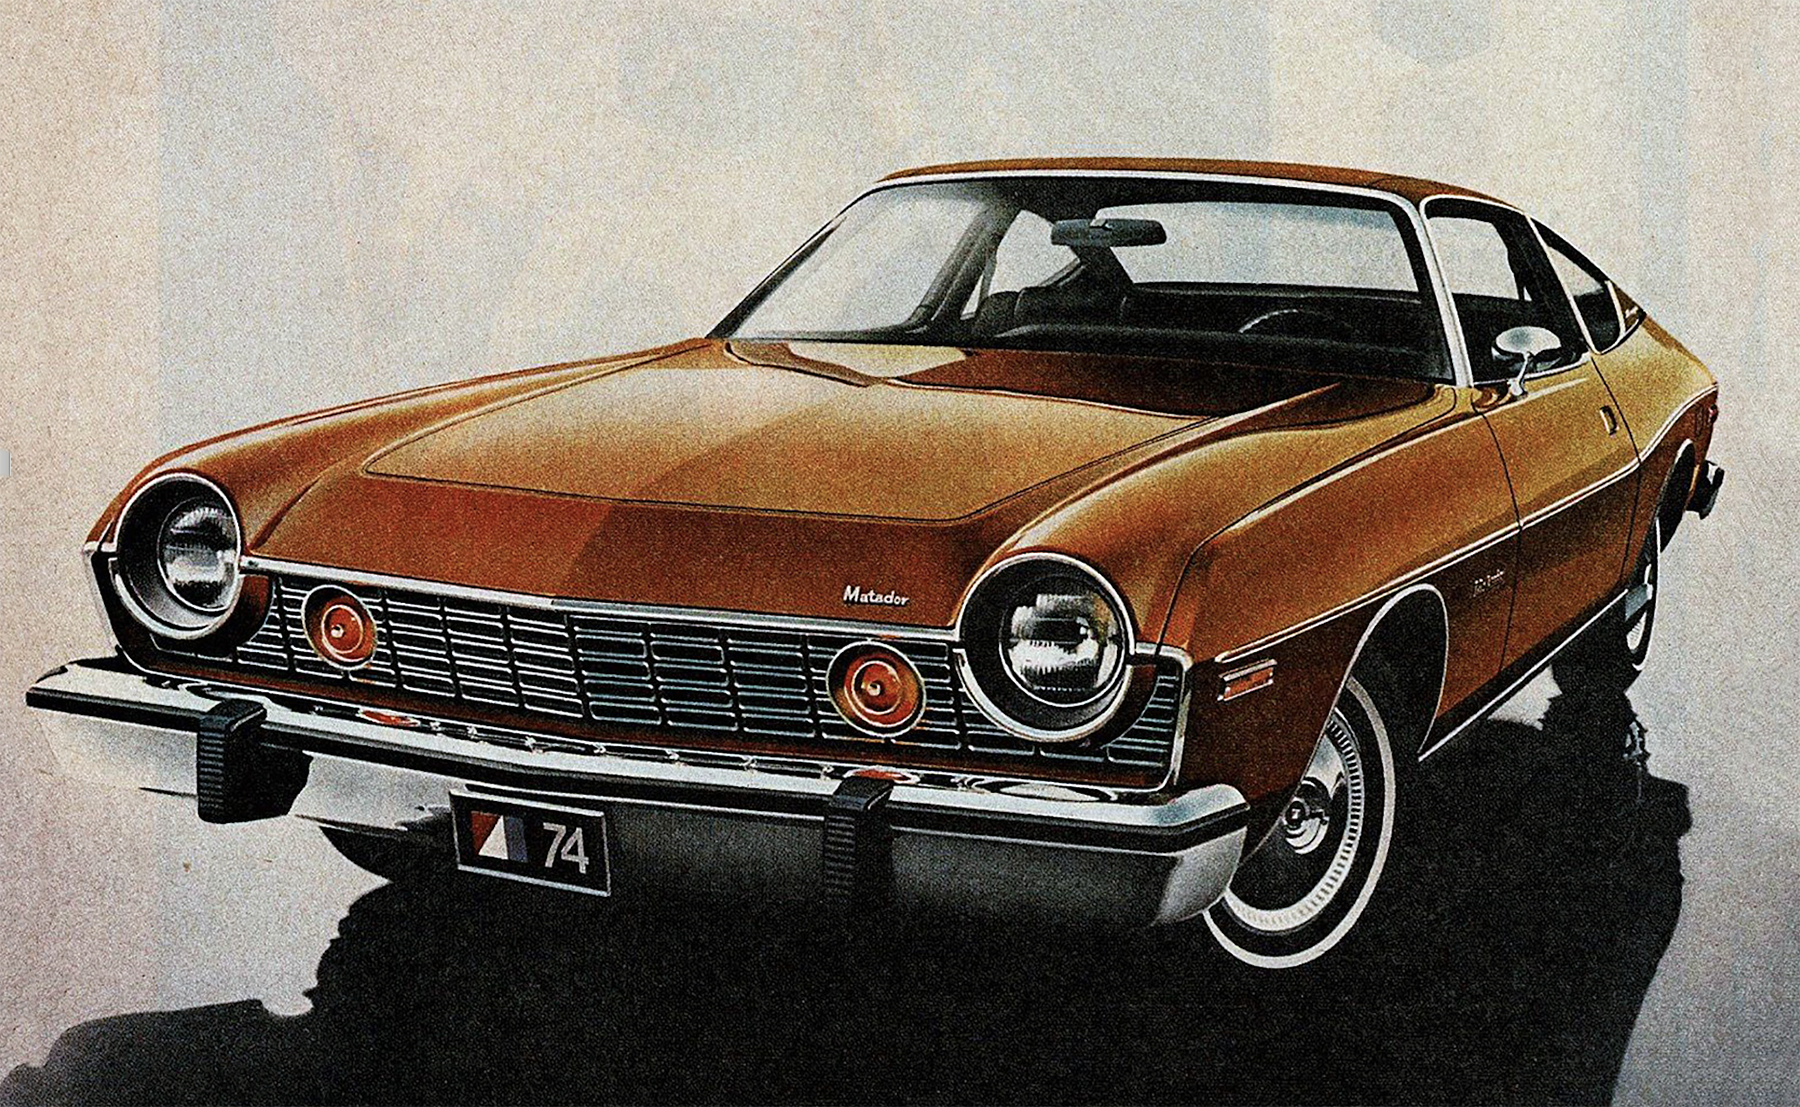 1974 AMC Matador, Cars of 1974